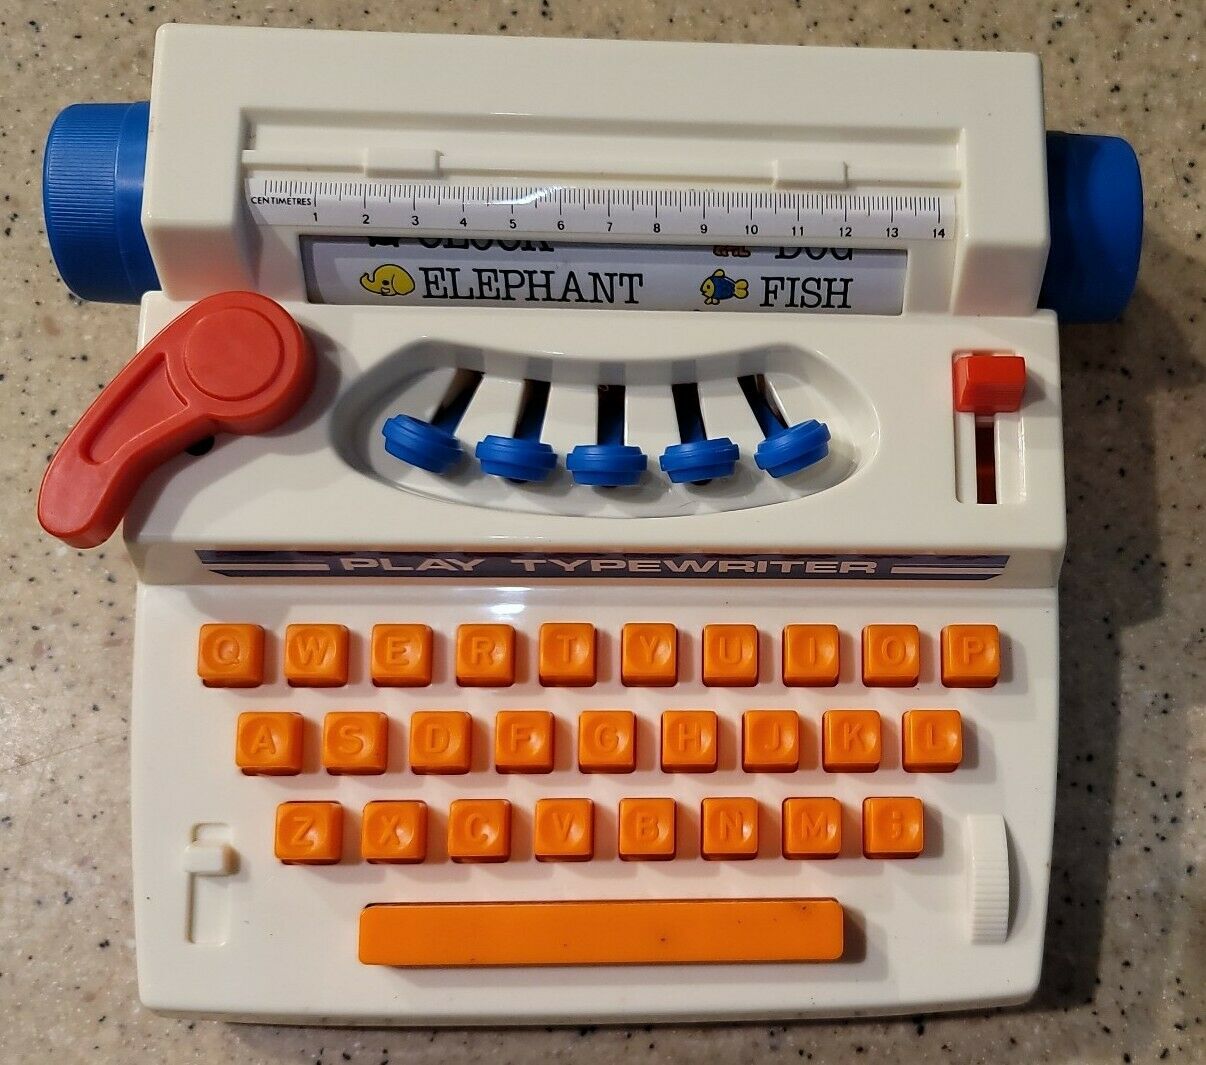 Vintage Antique Toy Typewriter Play Typewriter Plastic